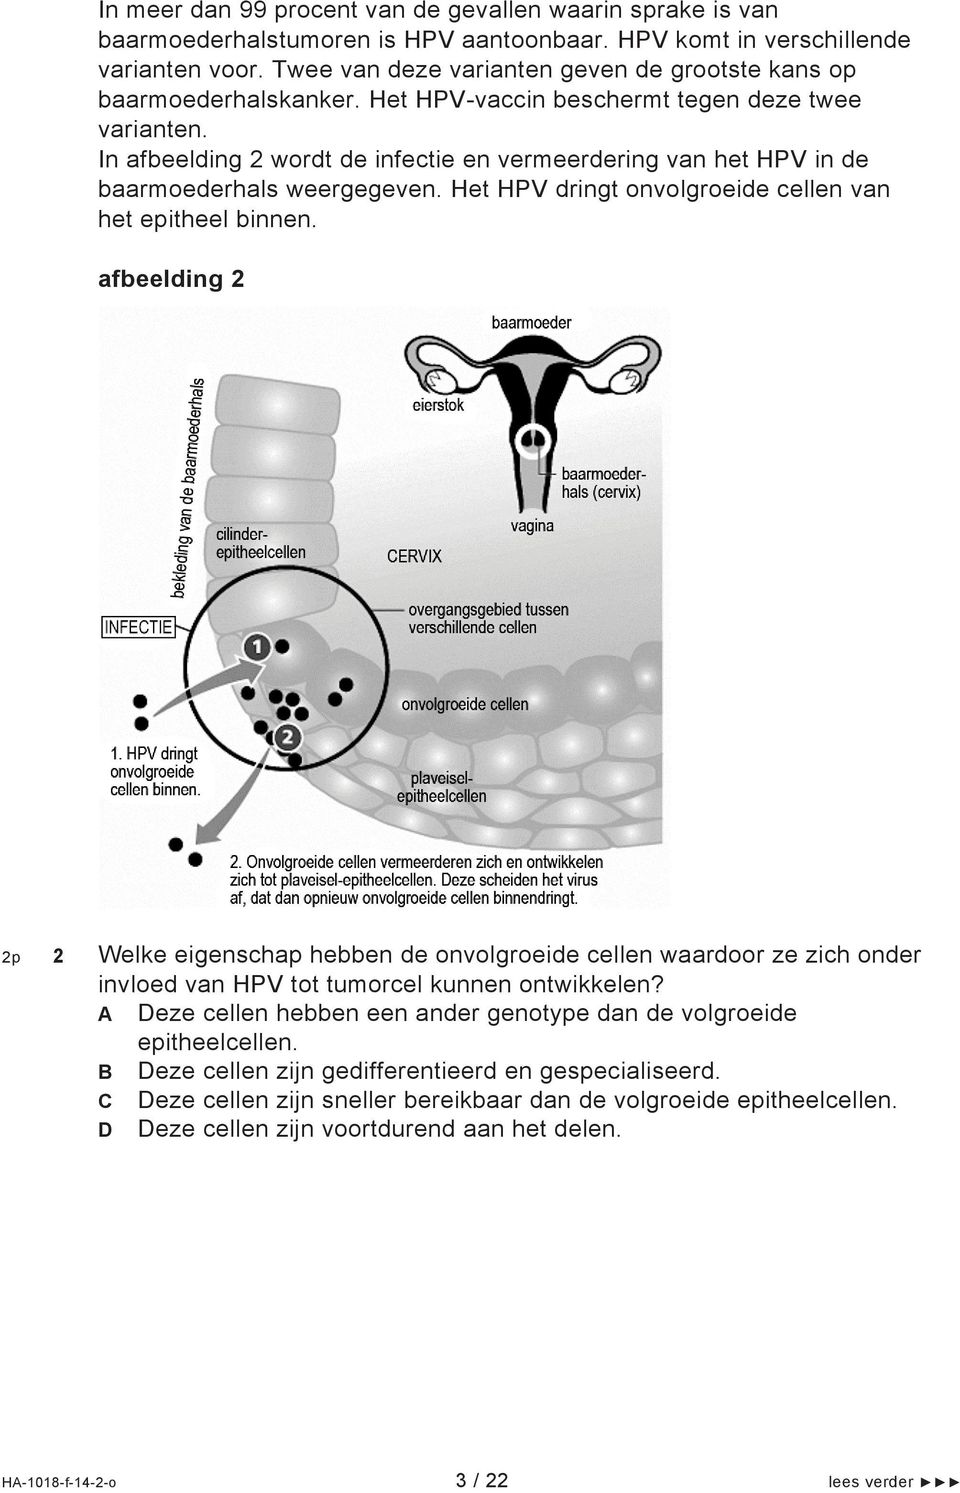 In afbeelding 2 wordt de infectie en vermeerdering van het HPV in de baarmoederhals weergegeven. Het HPV dringt onvolgroeide cellen van het epitheel binnen.